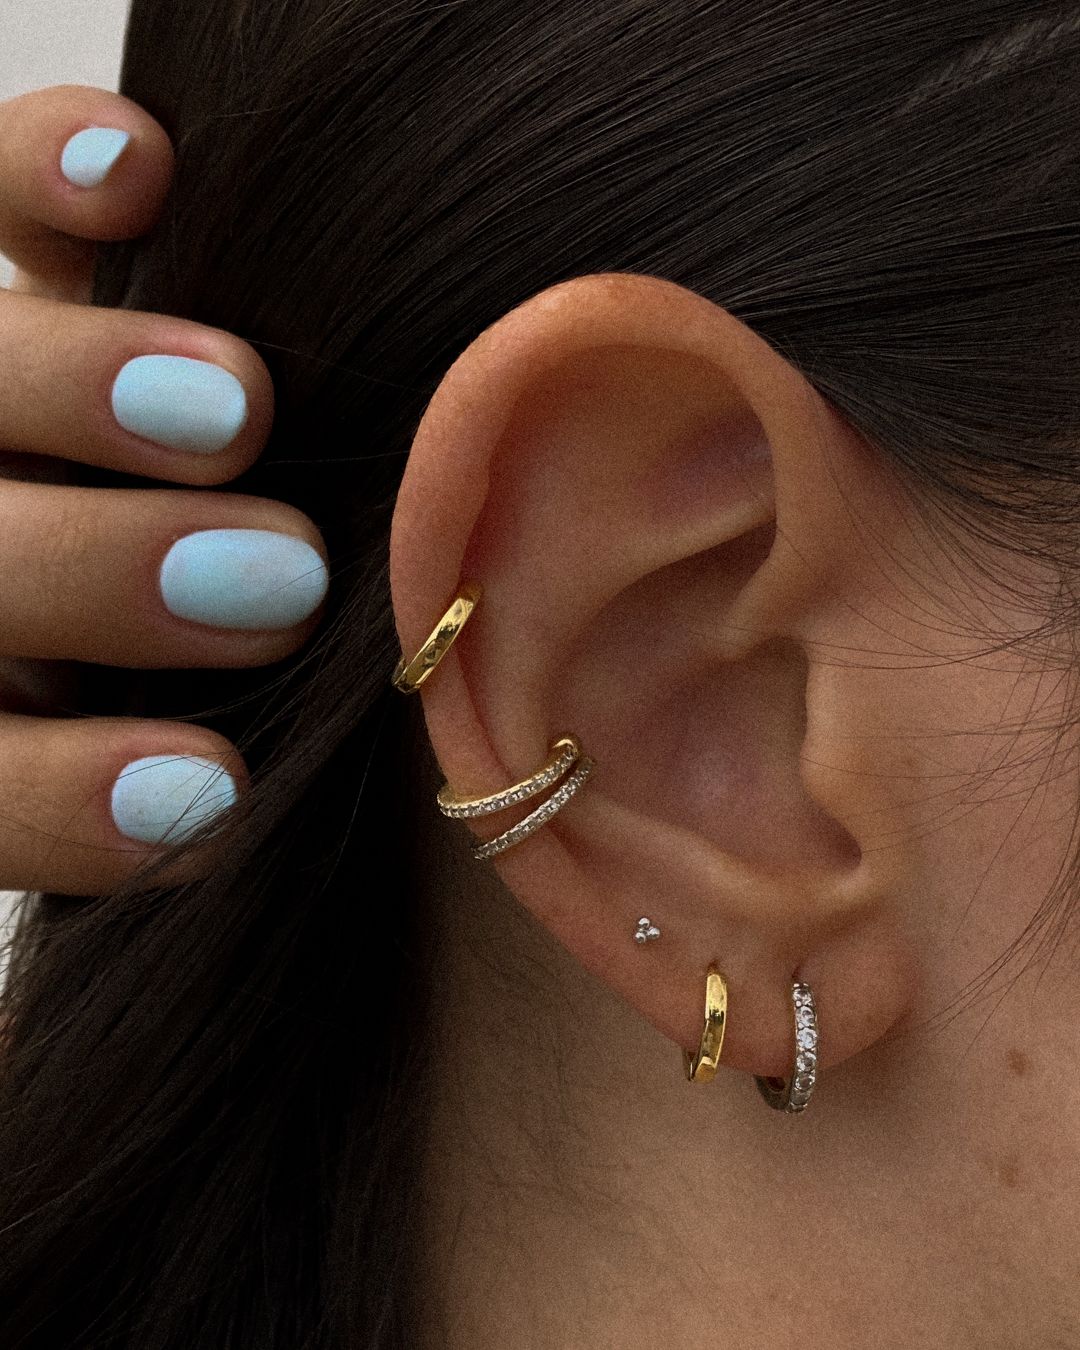 Gold Earrings Designs: Timeless Elegance for Every Ear